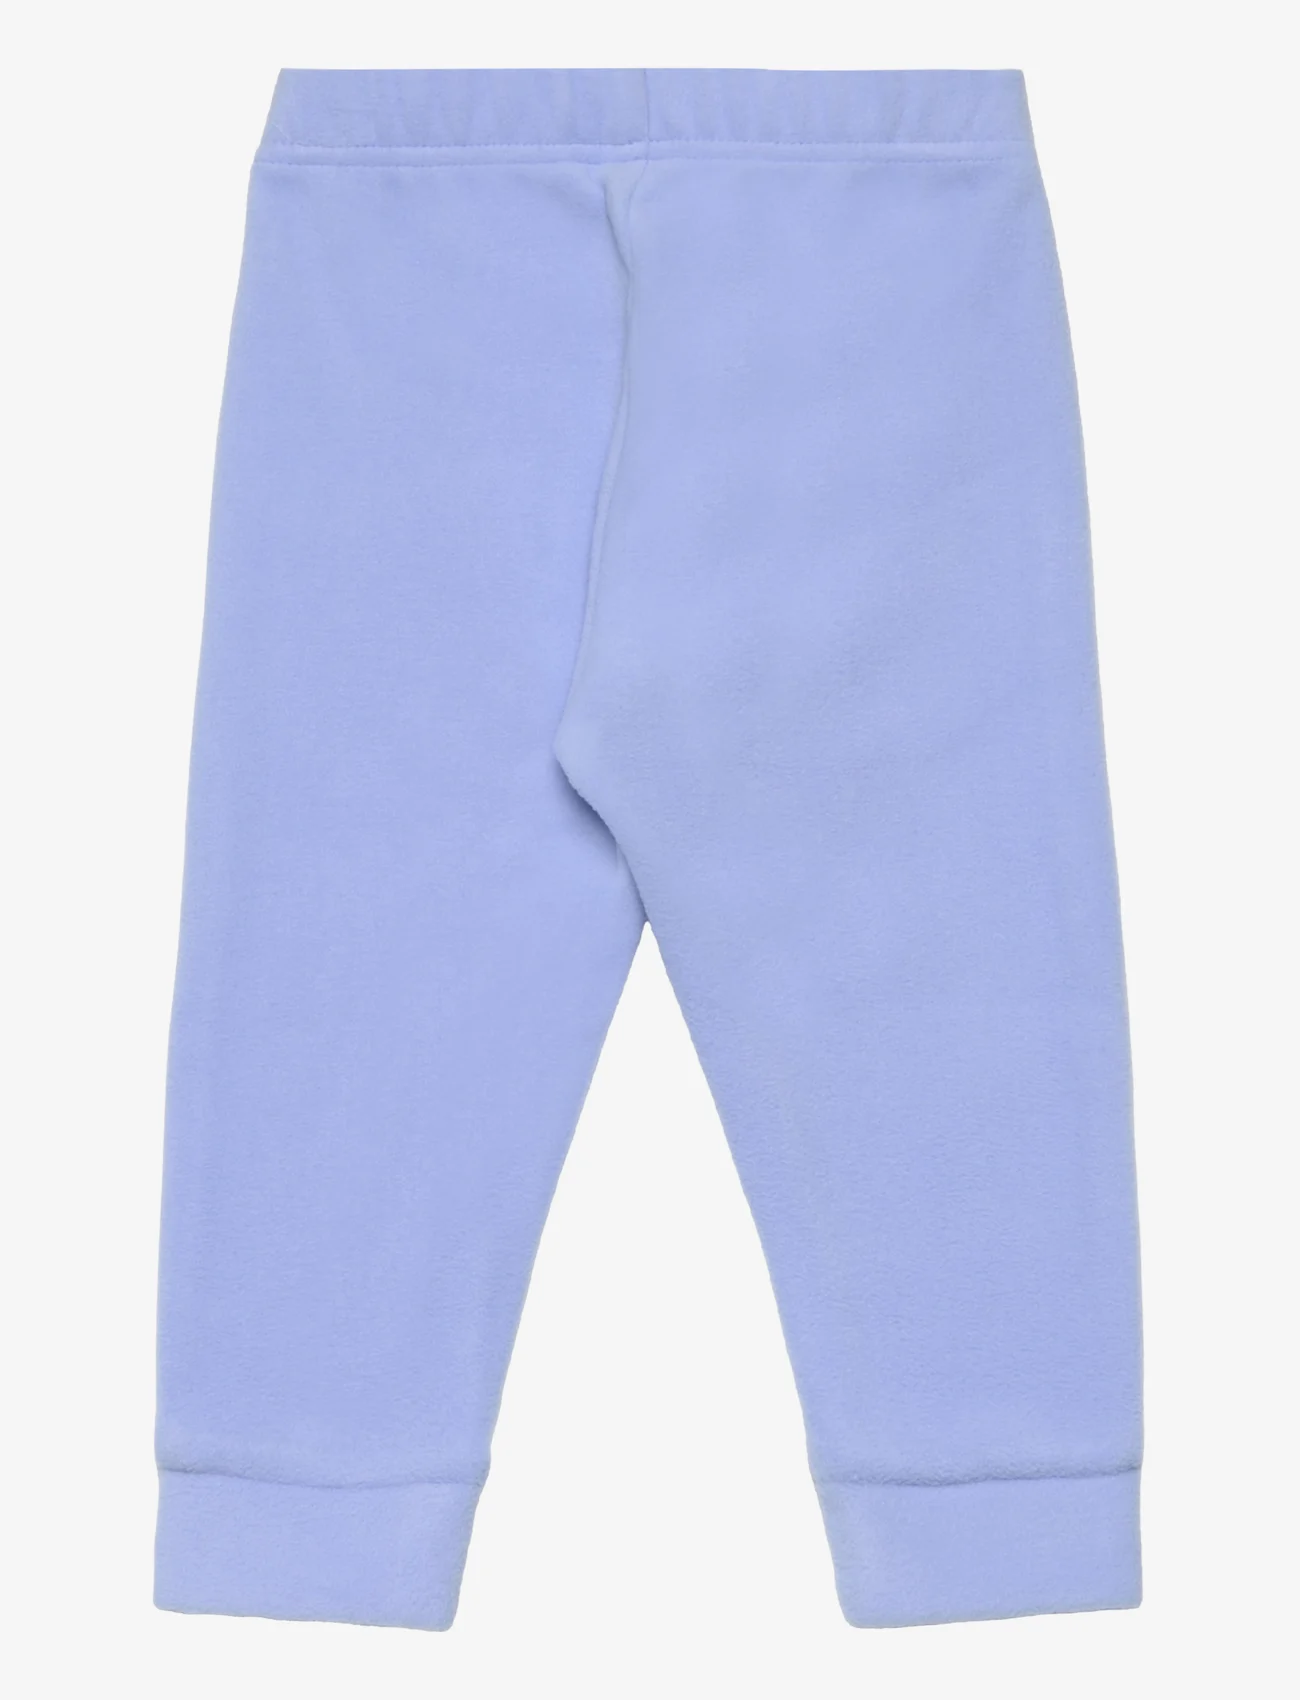 Lindex - Trousers Fleece - madalaimad hinnad - light blue - 1